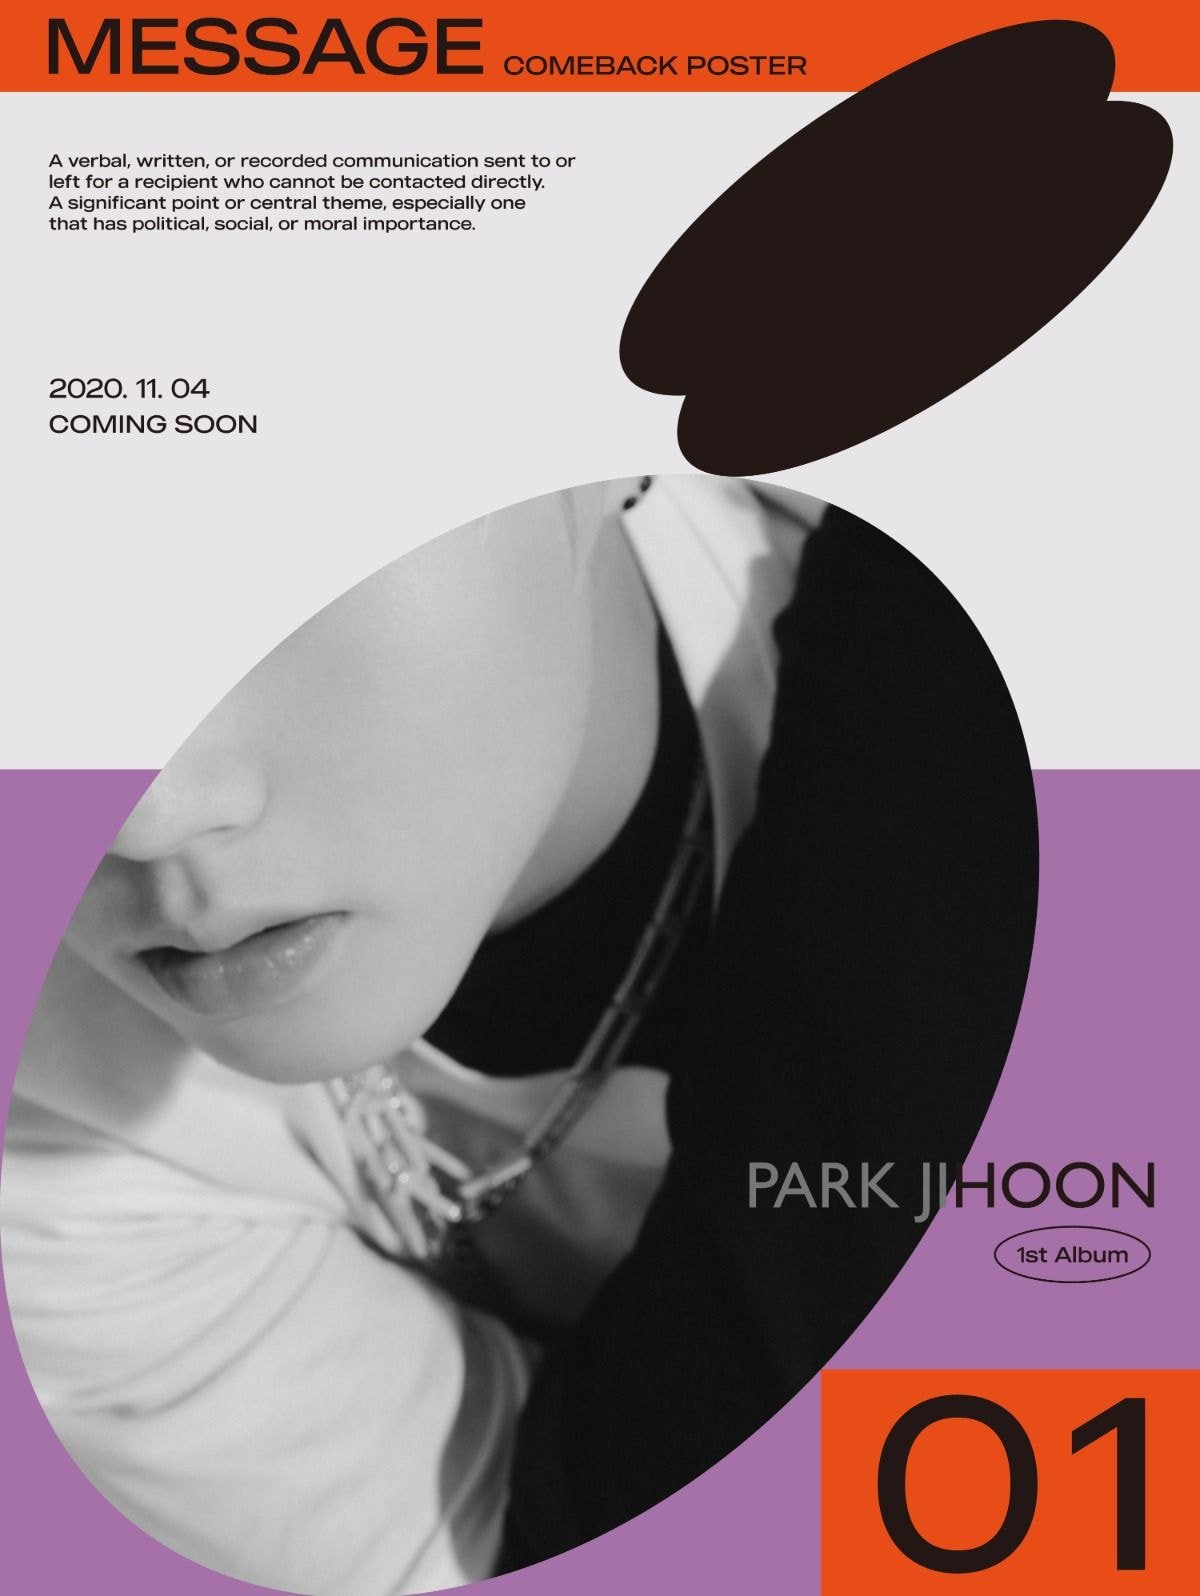 [#박지훈] PARK JI HOON 1st Album ‘MESSAGE’ COMEBACK POSTER ? 2020.11.04 6PM (KST) COMEBACK Coming Soon!